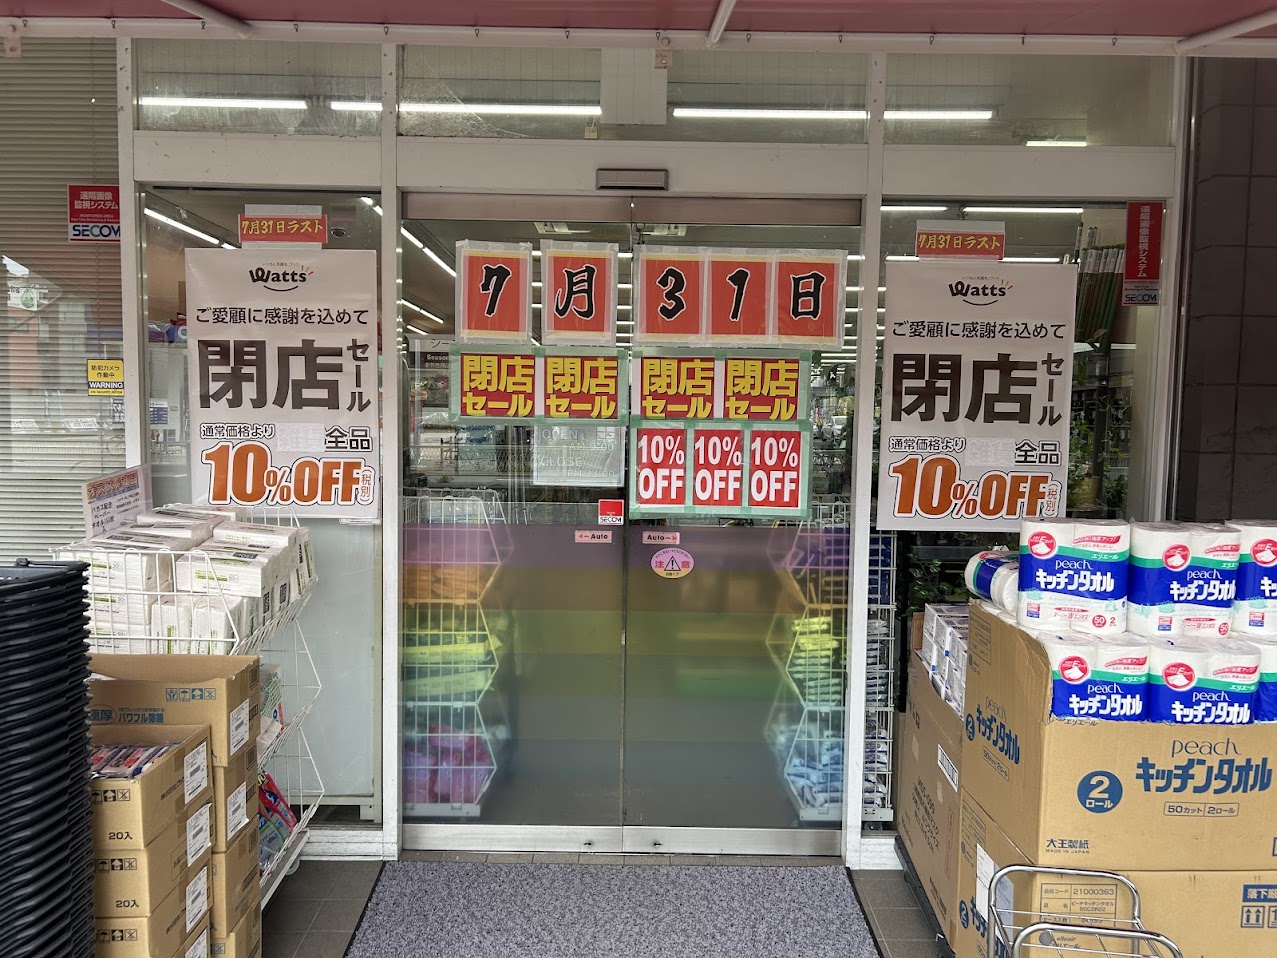 100円ショップ FLET'S 喜連瓜破店外観5